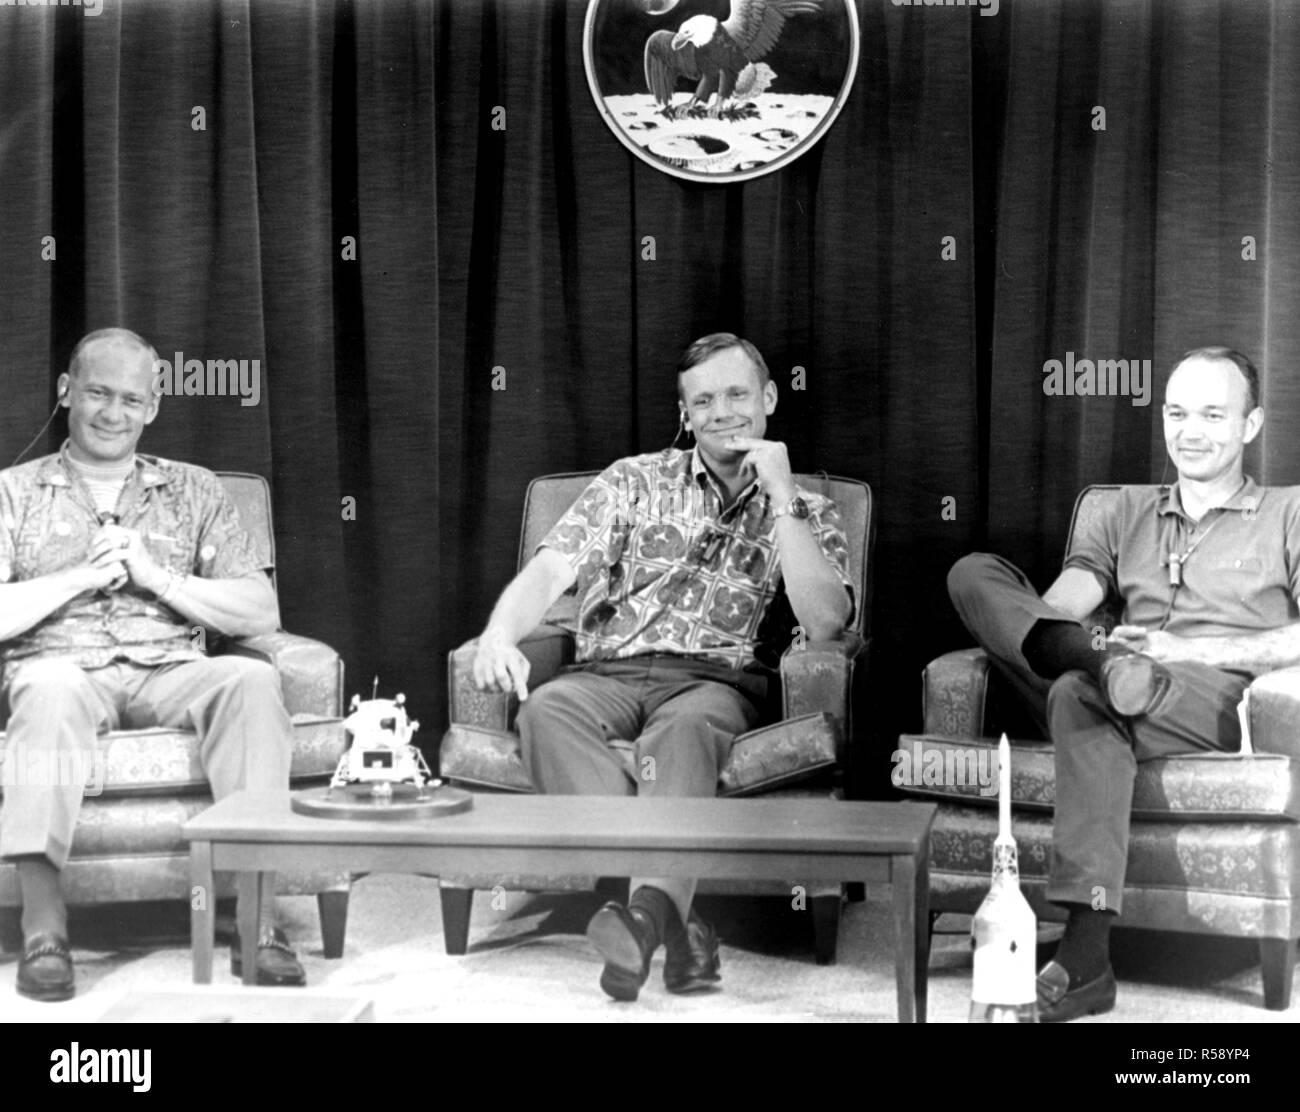 Apollo 11 Crew Mitglieder (L-R) Edwin Aldrin, Neil Armstrong, Michael Collins wurden durch eine Frage während einer geschlossenen Kreislauf Pressekonferenz die Nacht gestellt, bevor sie ihre historischen ersten Mondlandung Mission begann amüsiert. Stockfoto